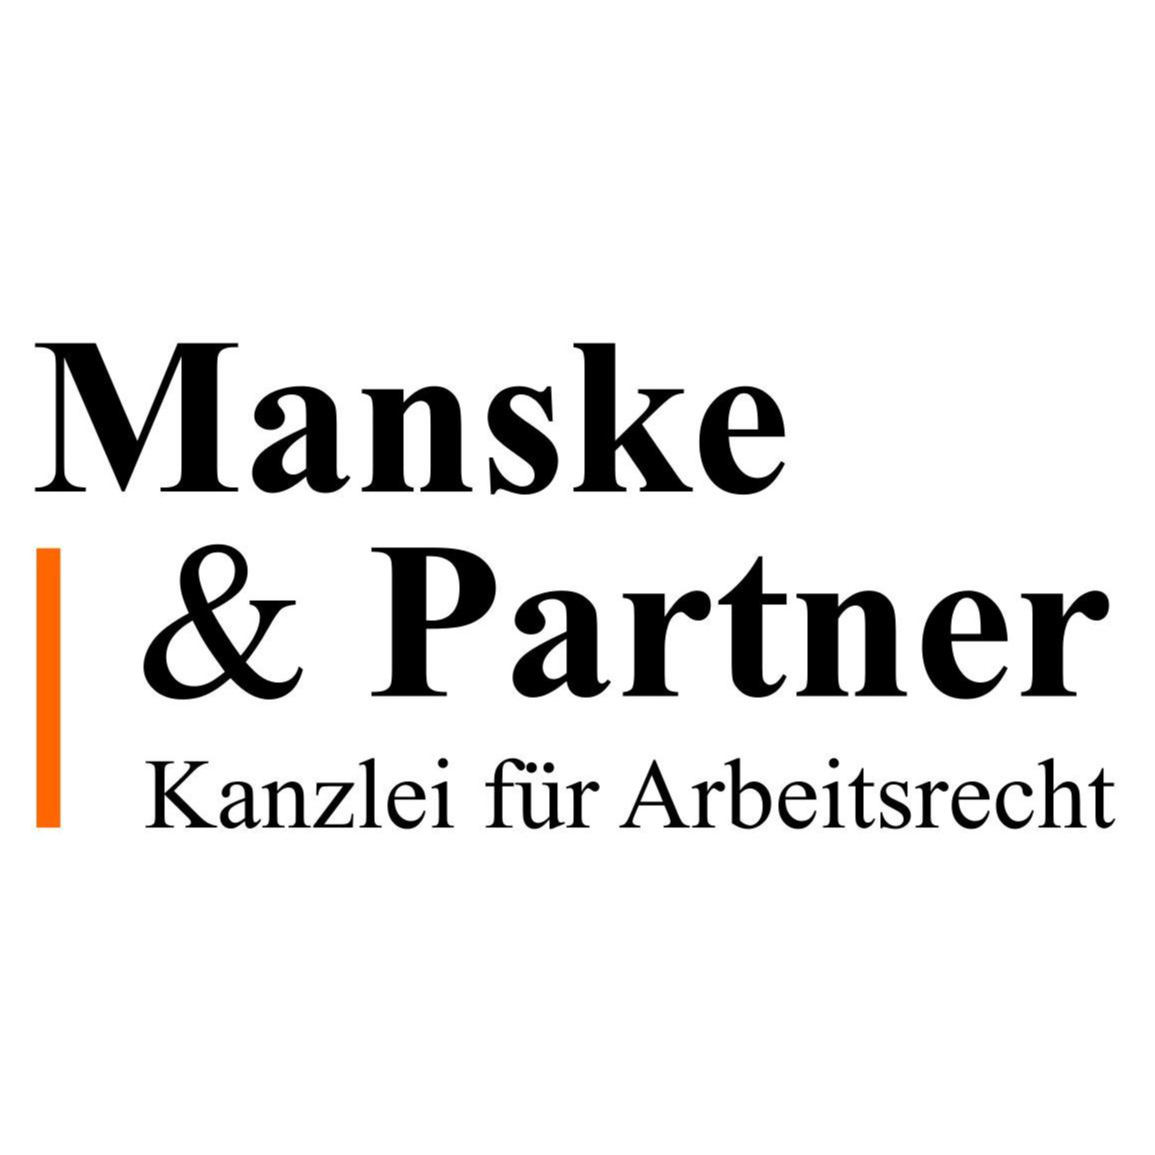 Manske & Partner Kanzlei für Arbeitsrecht Logo